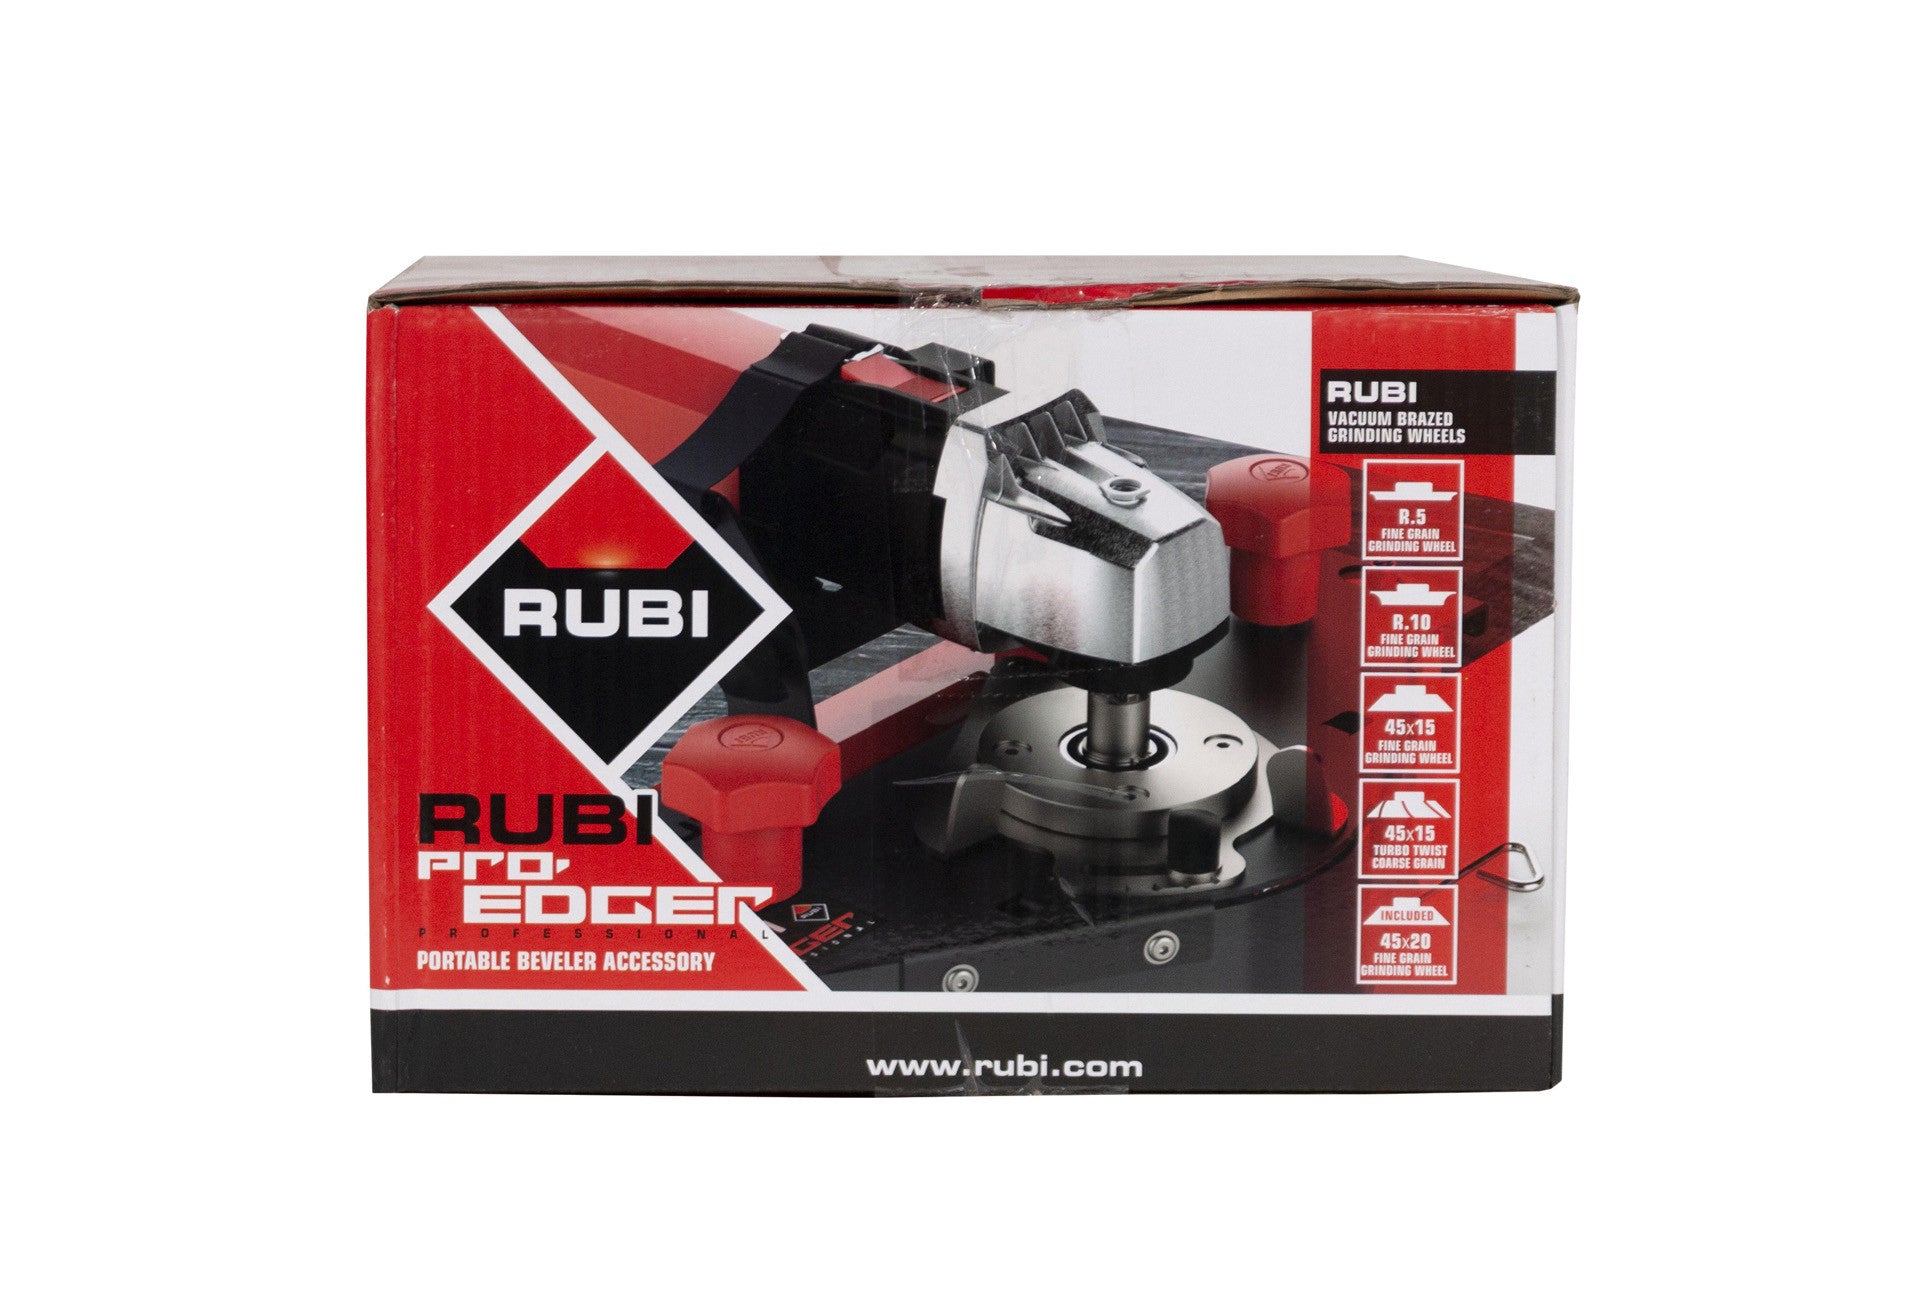 Biseladora Portatil PRO-EDGER Rubi RUBI - 7